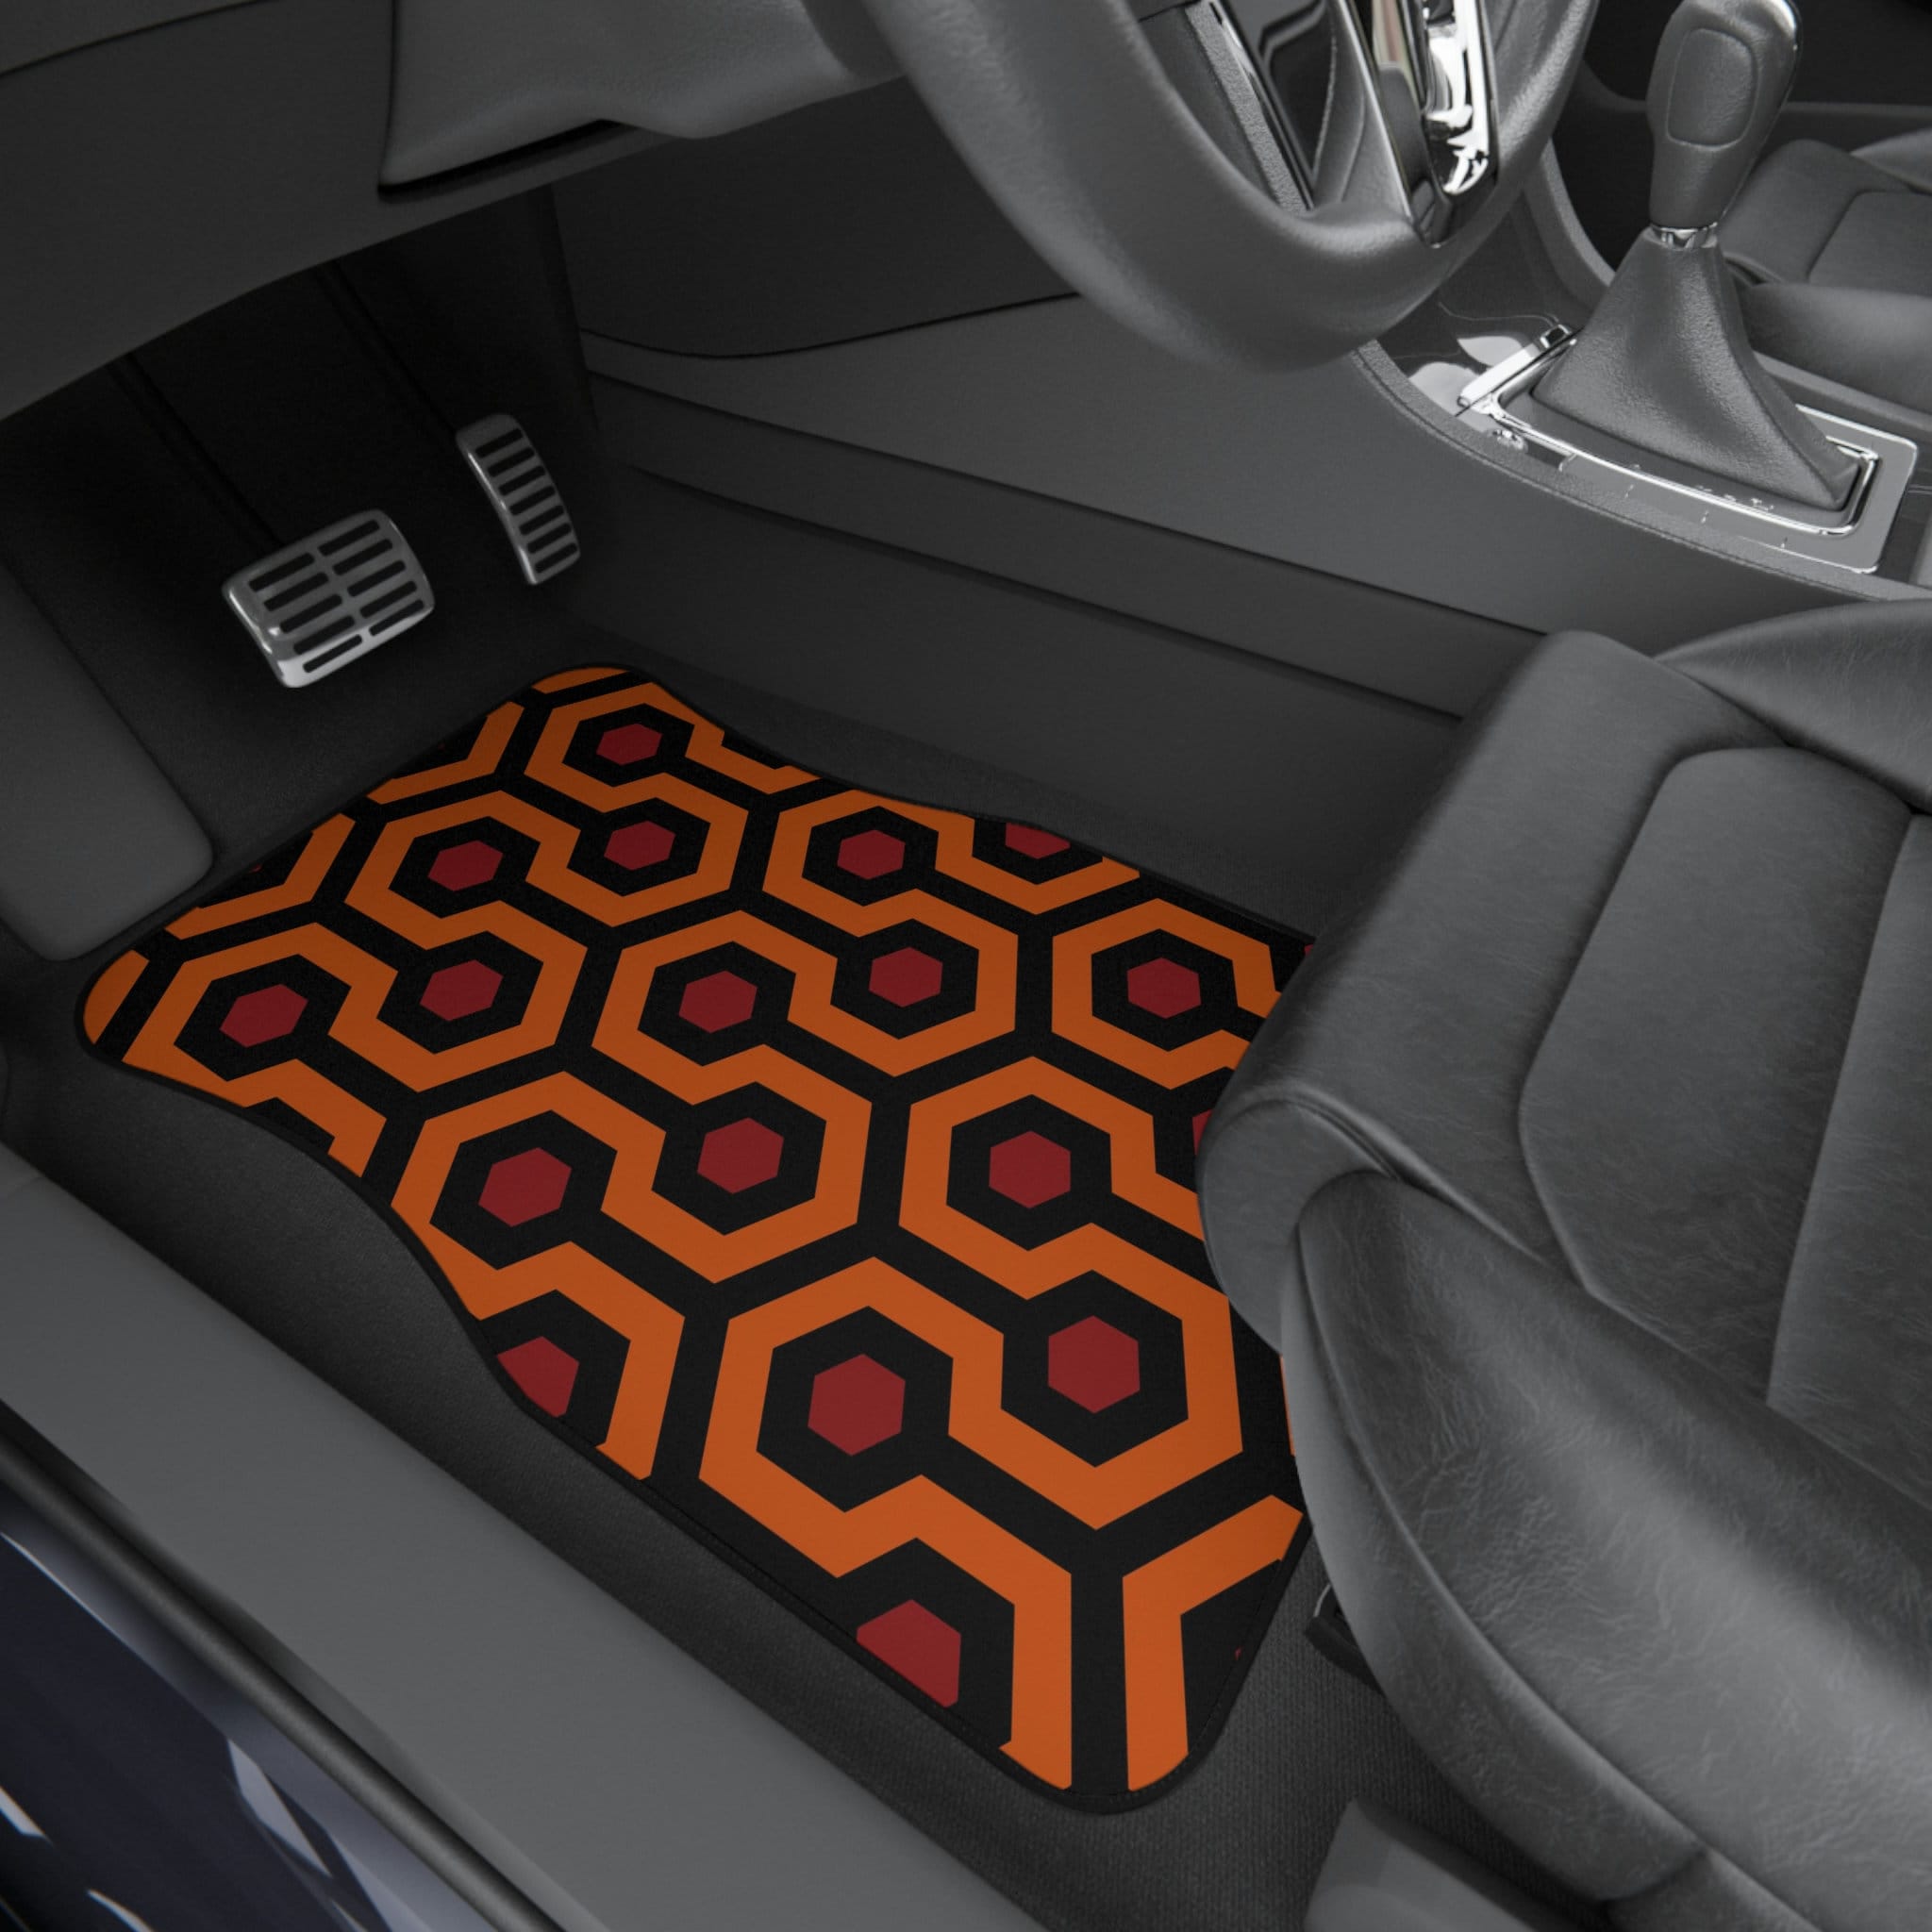 Autozubehör für Männer Auto Fußmatten mit glänzendem Overlook Hotel Teppich  Muster Design Autozubehör für Jugendliche Auto Fußmatten, Autozubehör -  .de